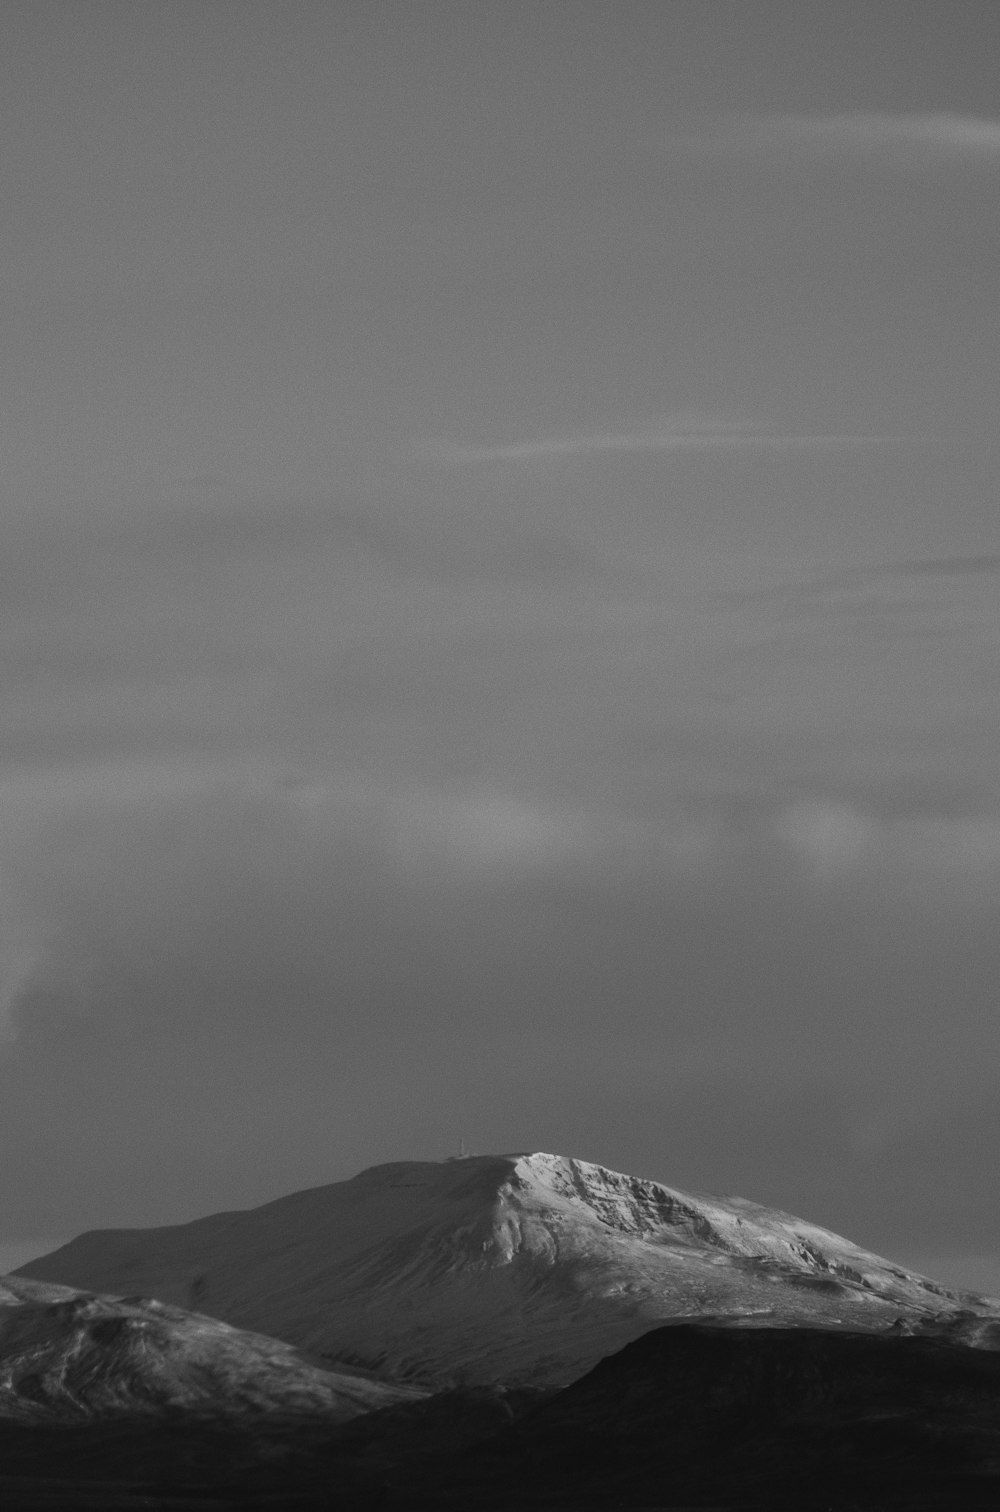 눈 덮인 산의 흑백 사진